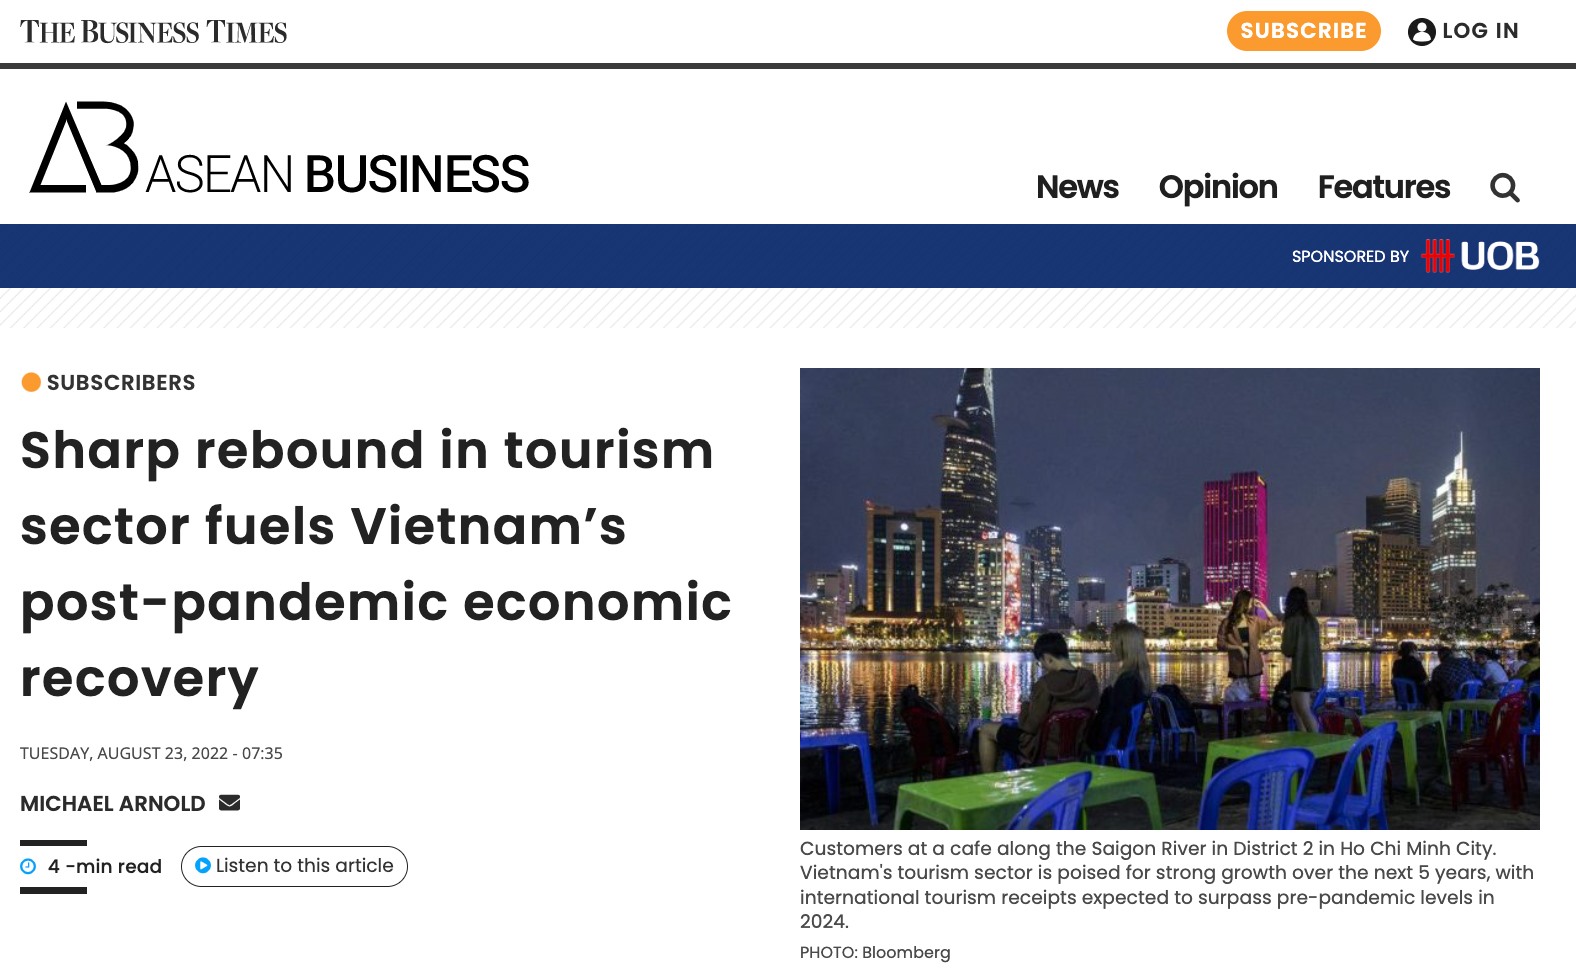 Bùng nổ du lịch thúc đẩy phục hồi kinh tế Việt Nam sau đại dịch